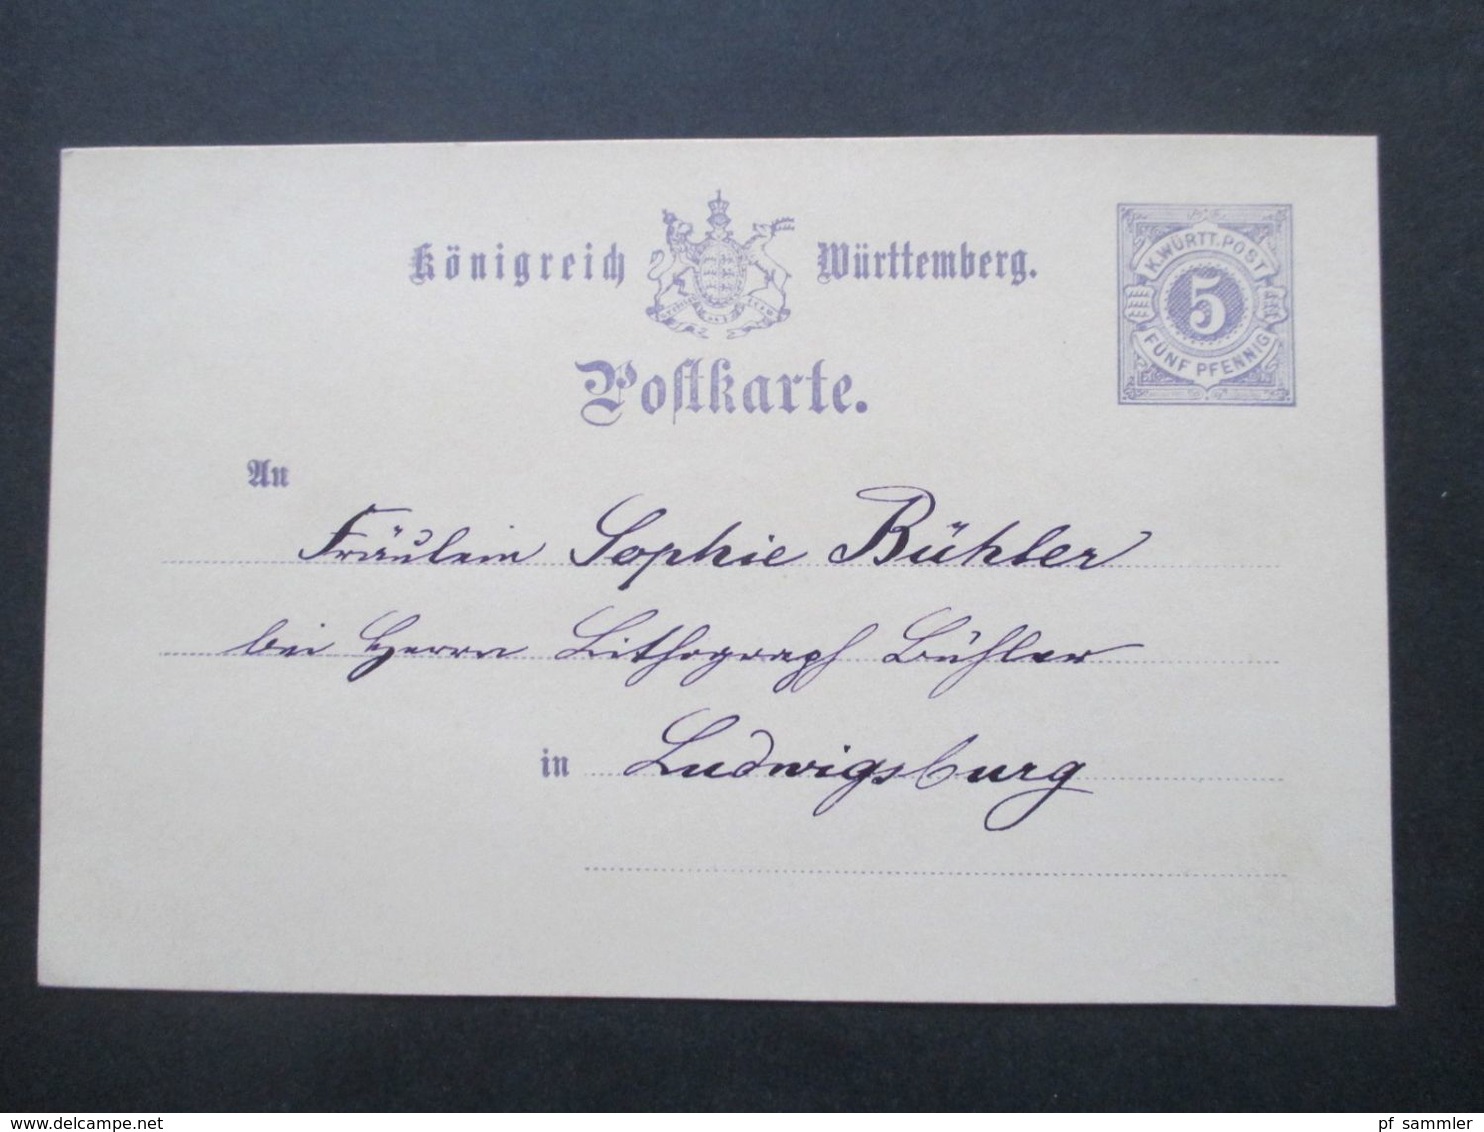 Altdeutschland Württemberg ab 1879 Ganzsachen / Umschläge gebraucht und ungebraucht